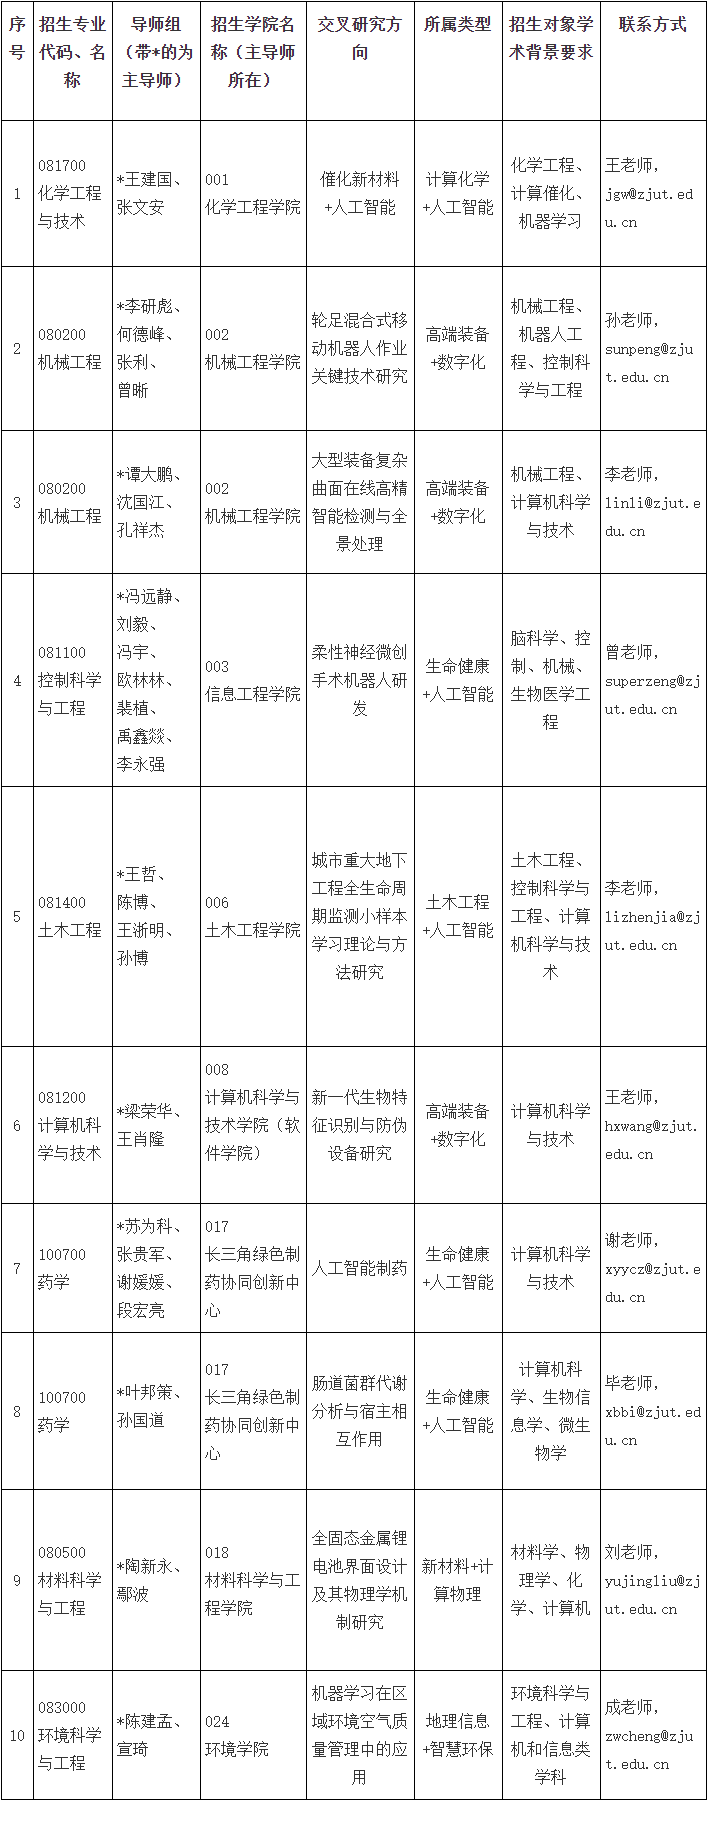 浙江工业大学2023年学科交叉培养博士研究生专项计划招生简章